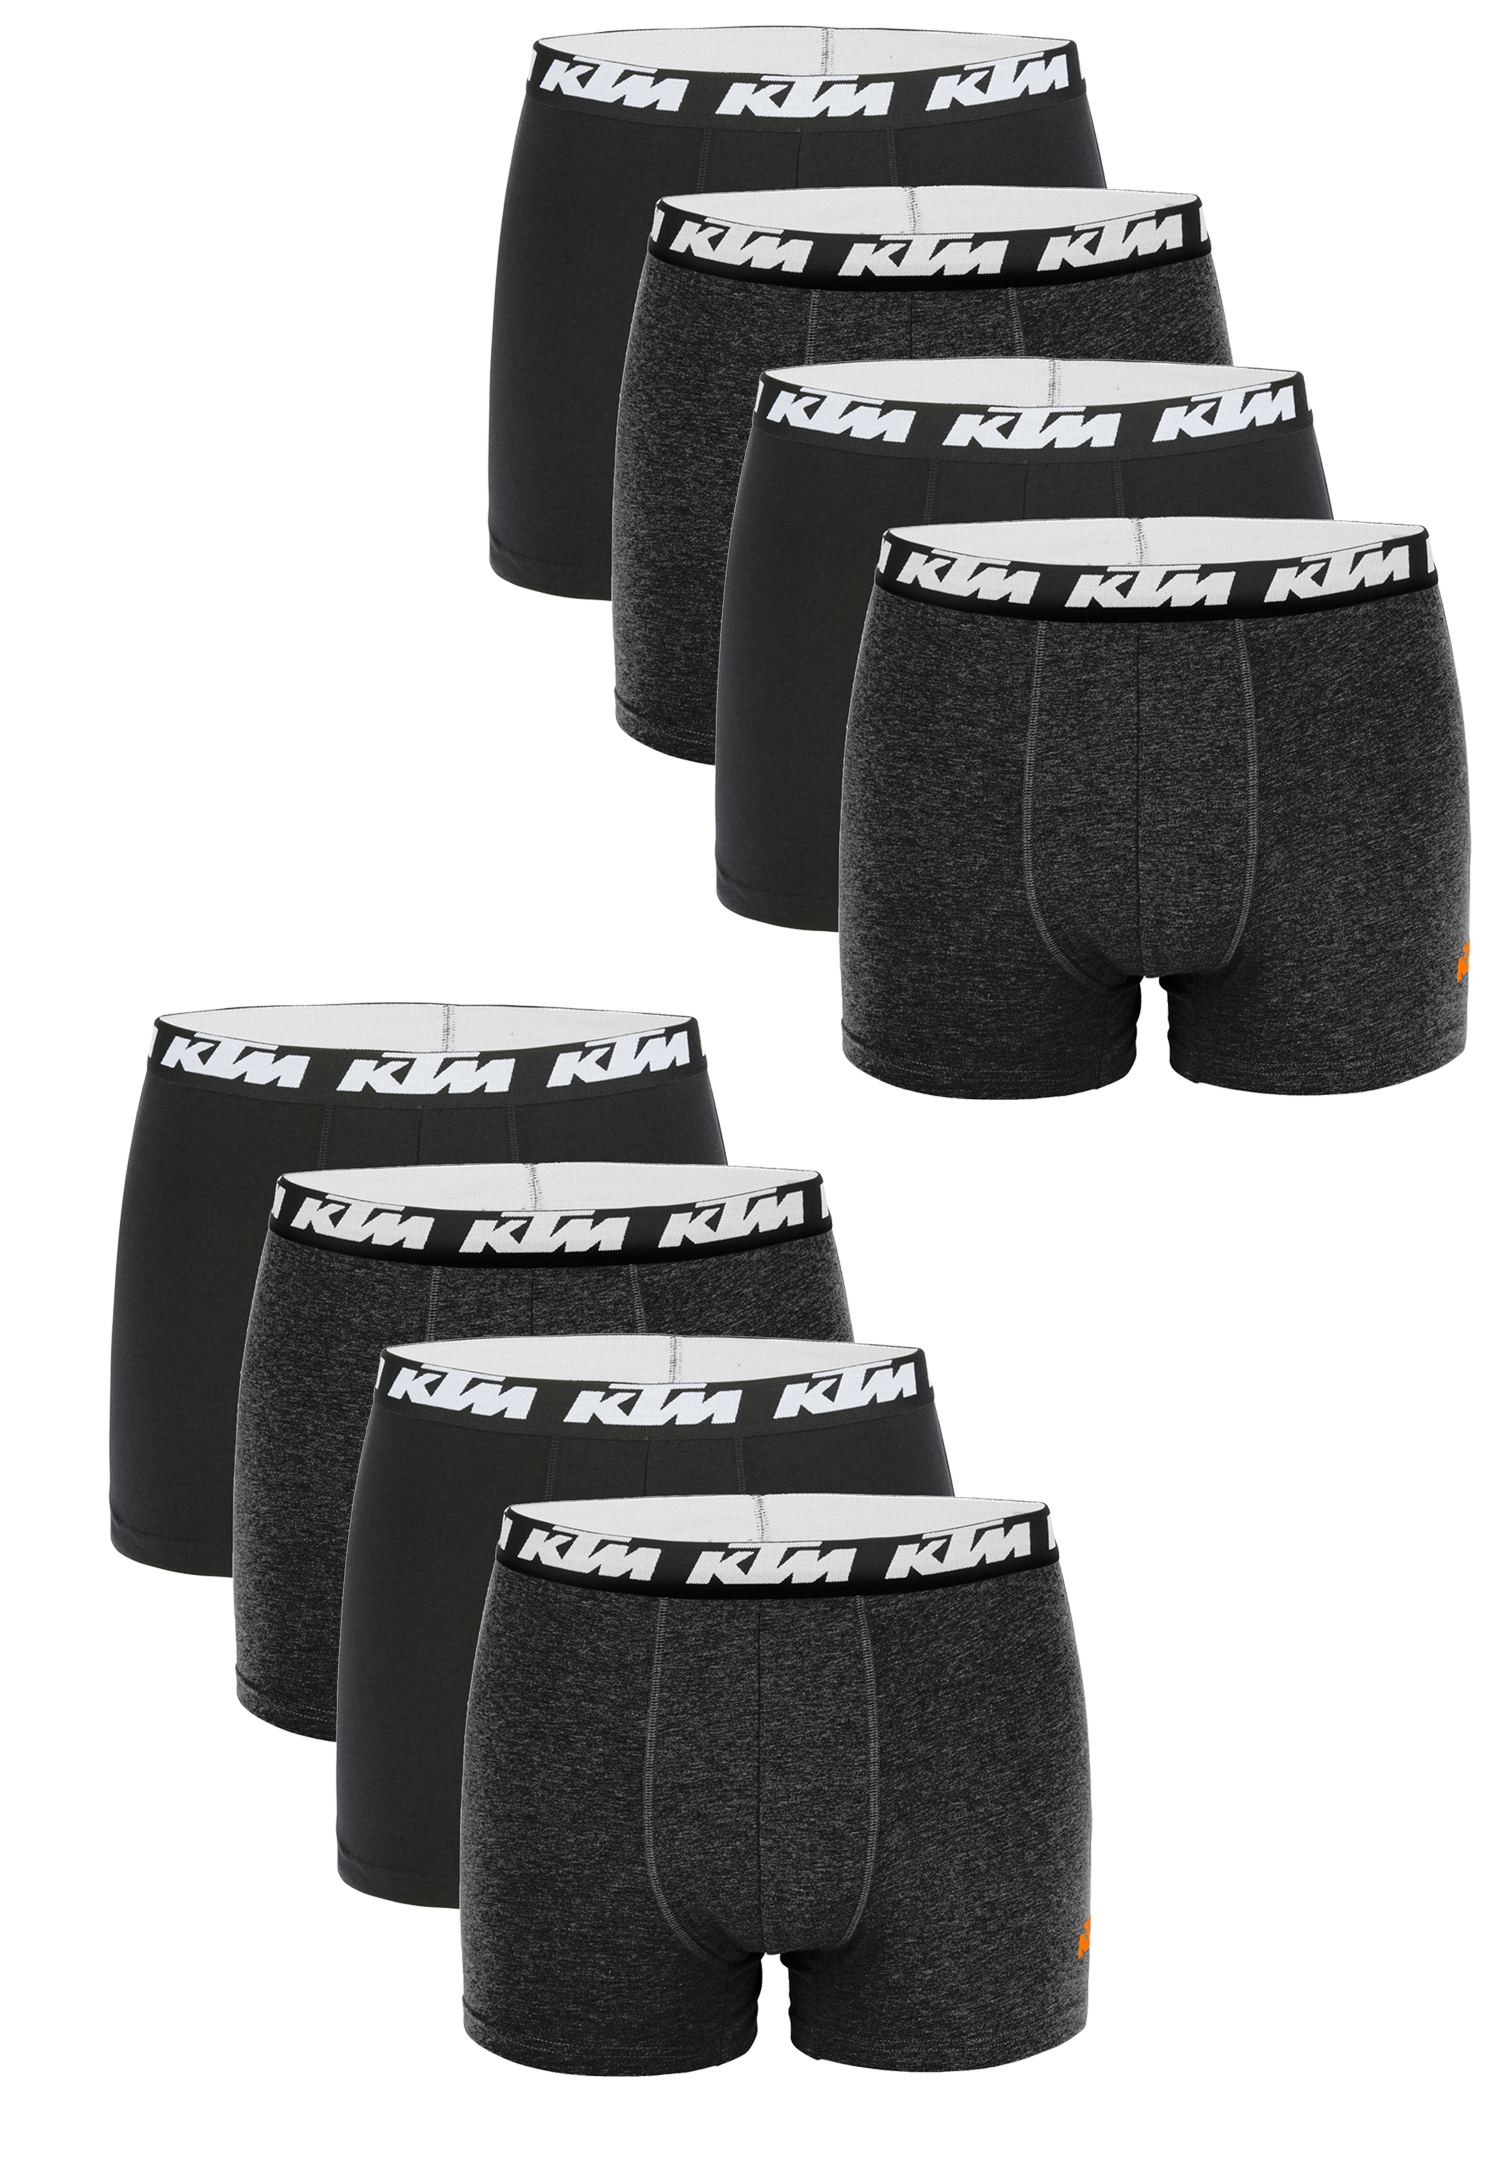 KTM Boxer Men Herren Boxershorts Pant Unterwäsche 6 er Pack, Farbe:Dark Grey / Black, Bekleidungsgröße:S